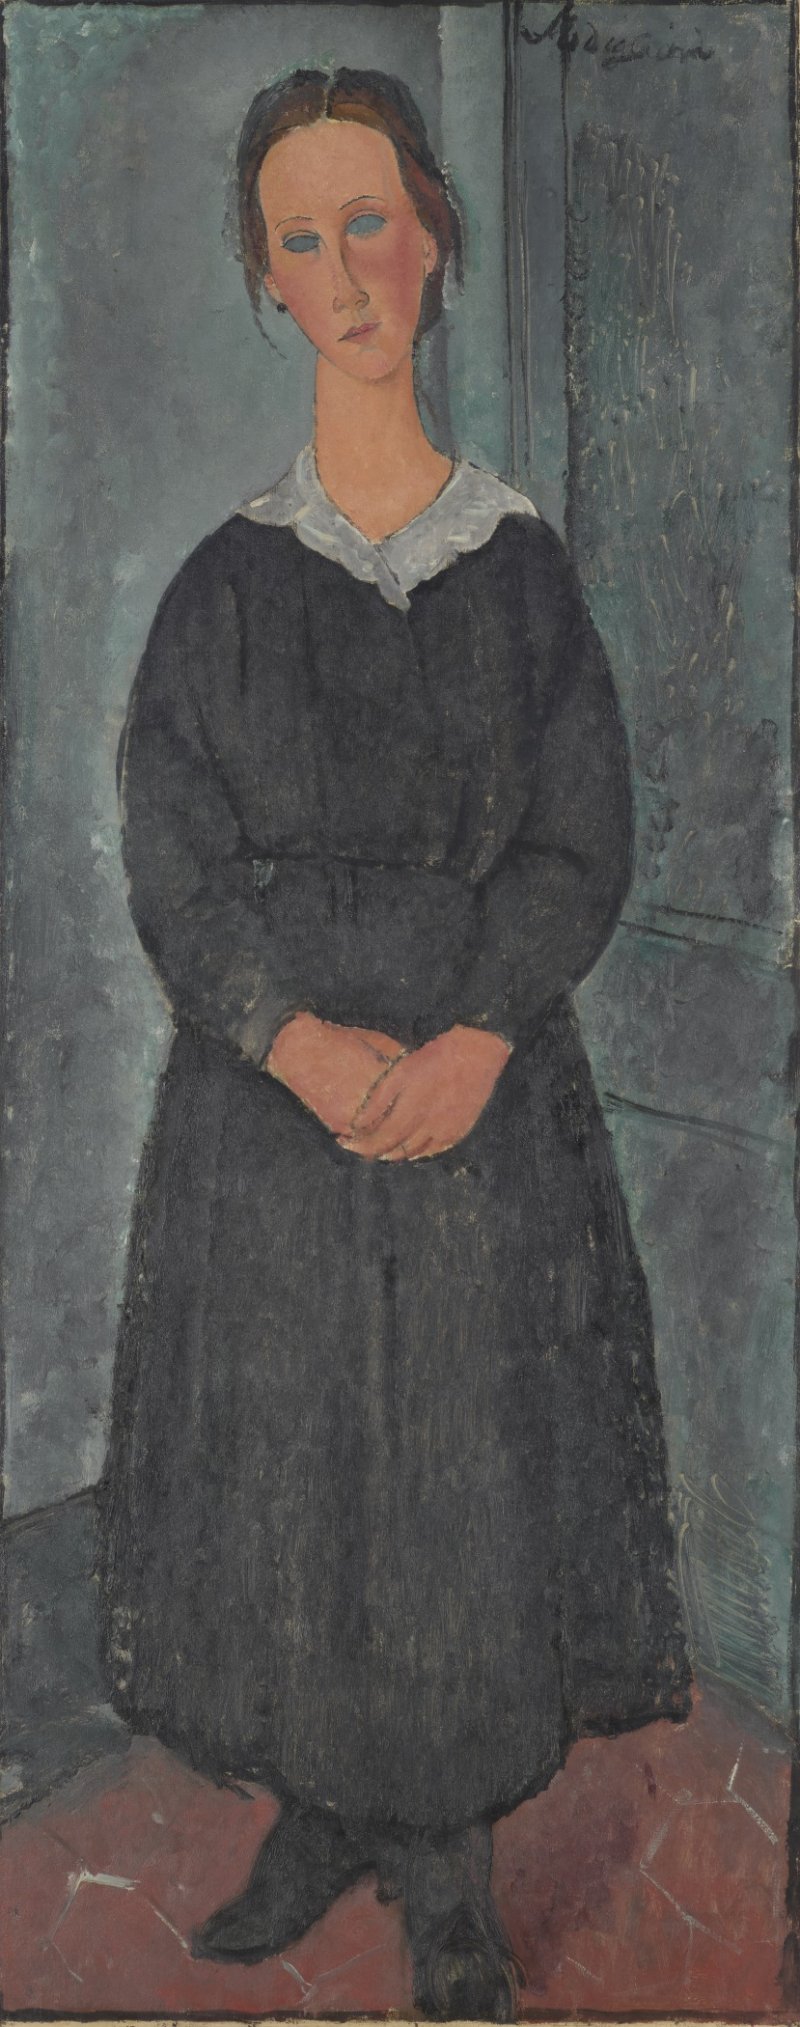 Amedeo Modigliani's La Jeune bonne (The Servant Girl), ca. 1918